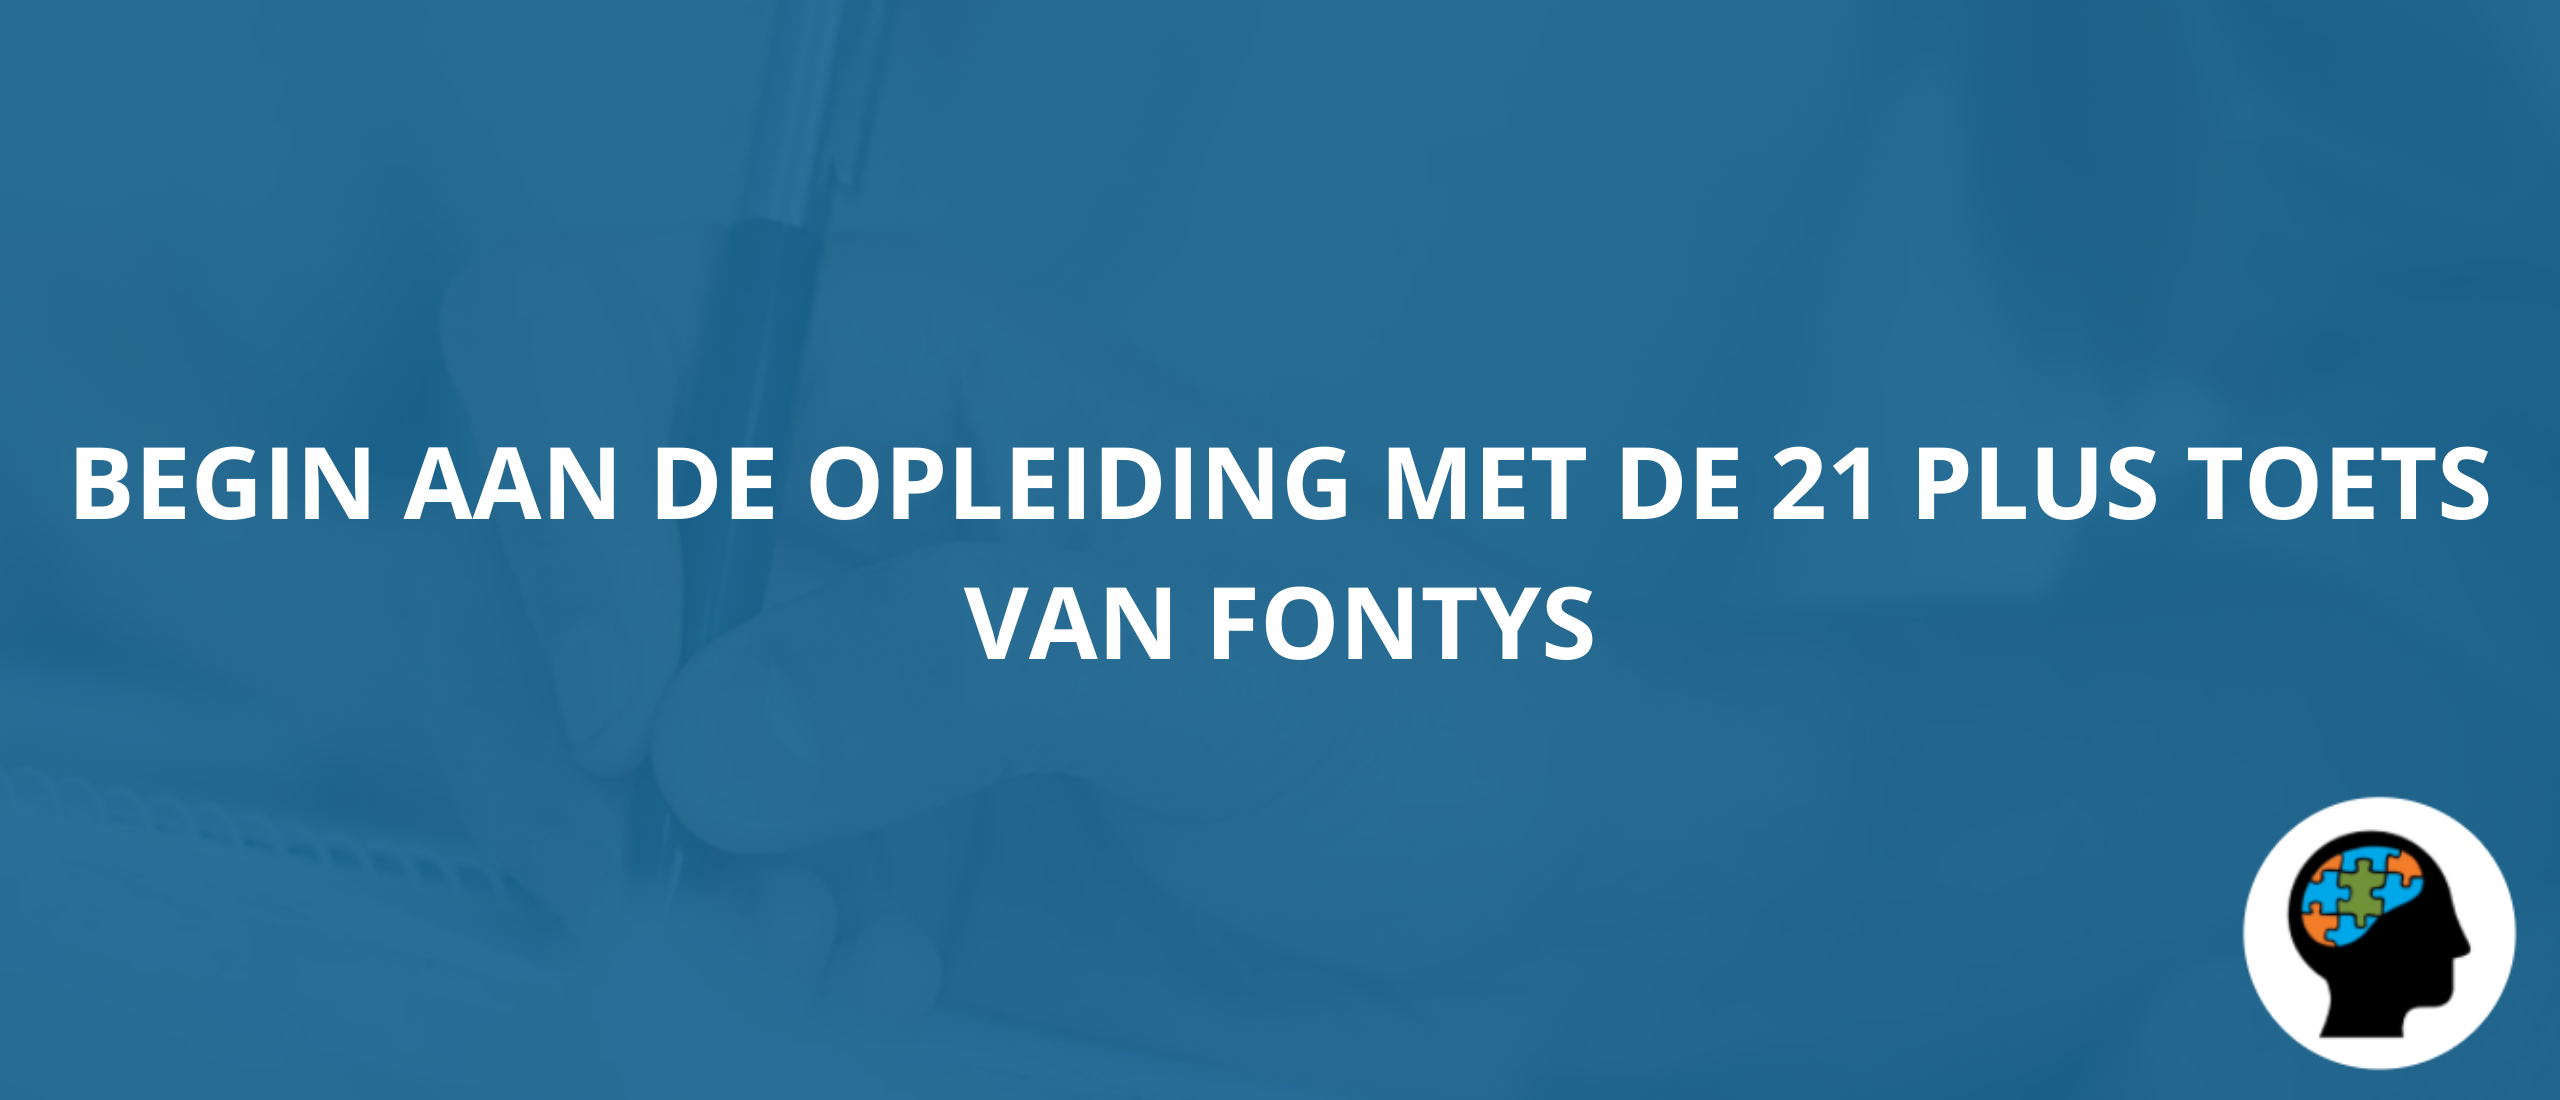 Begin aan de opleiding met de 21 plus toets van Fontys